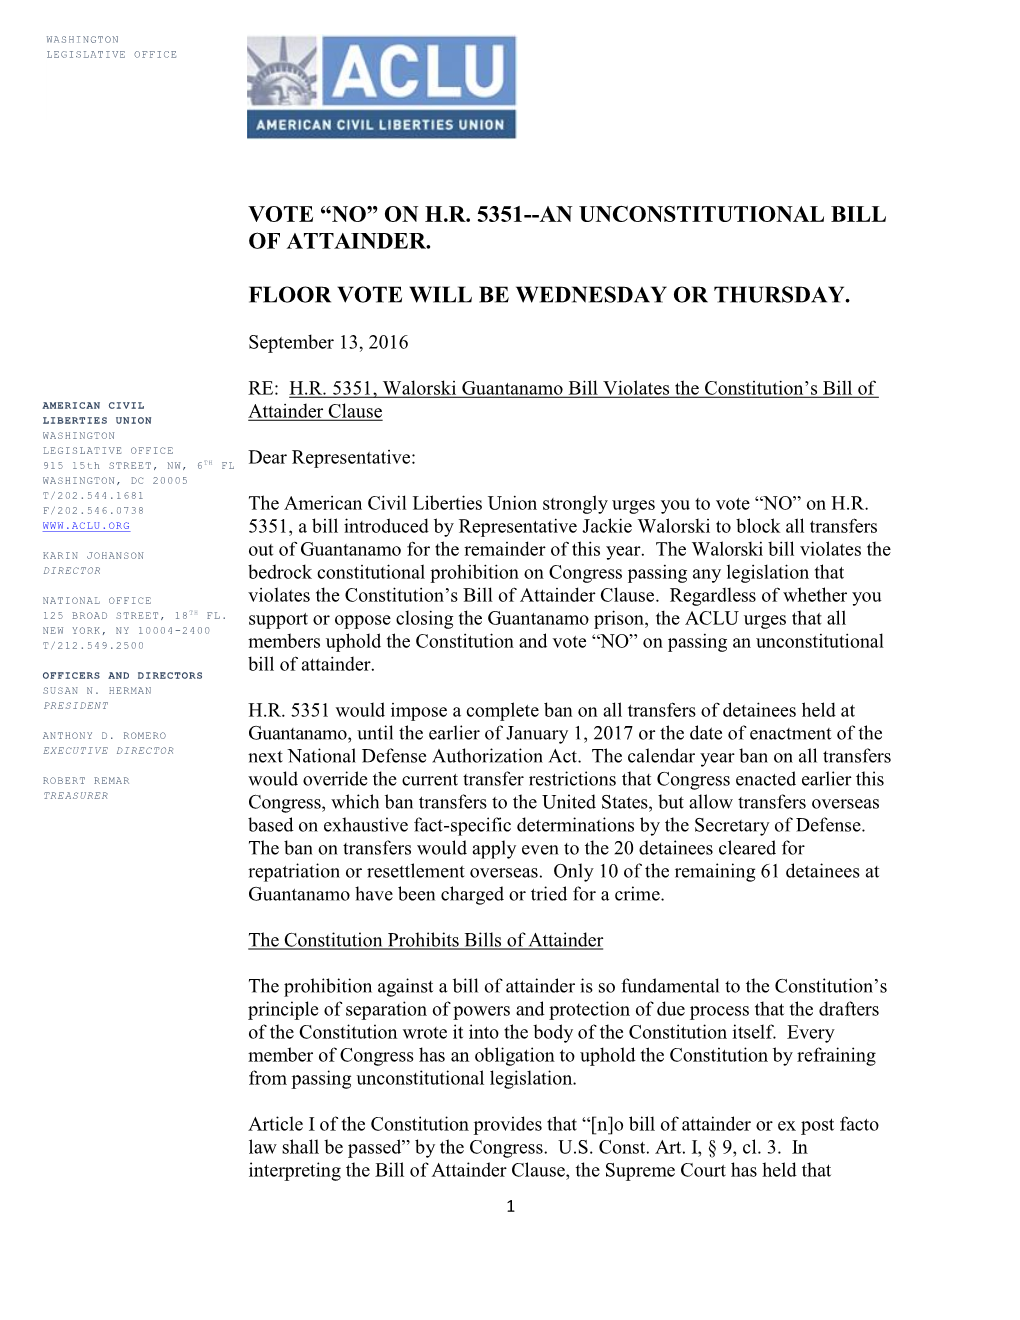 Vote “No” on H.R. 5351--An Unconstitutional Bill of Attainder